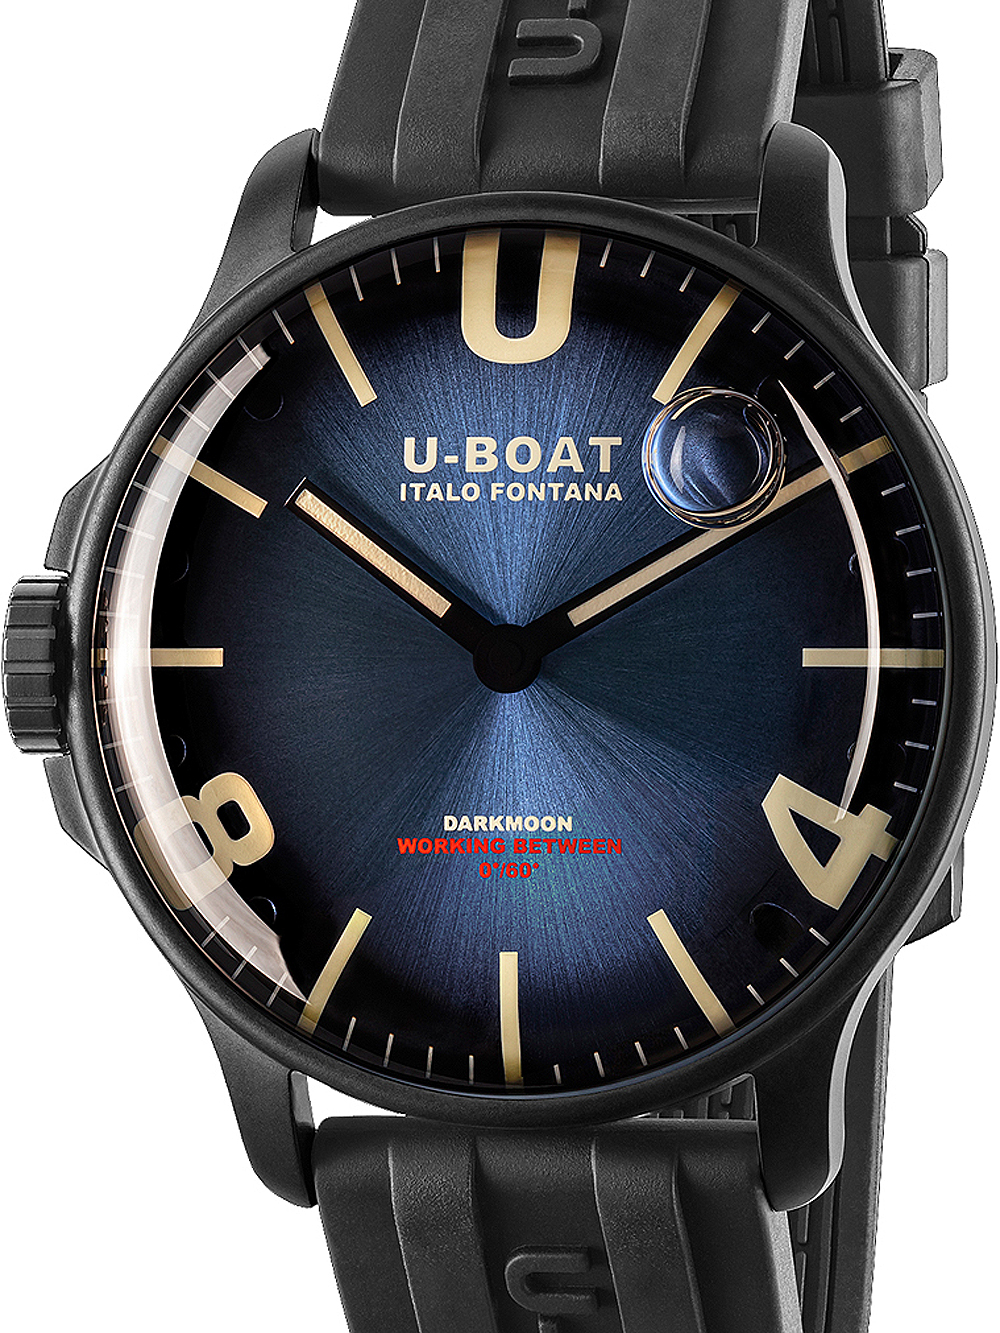 U-Boat 8700/C Darkmoon Blue IPB Soleil 44mm 5ATM BY U-BOAT - Wristwatch available at DOYUF